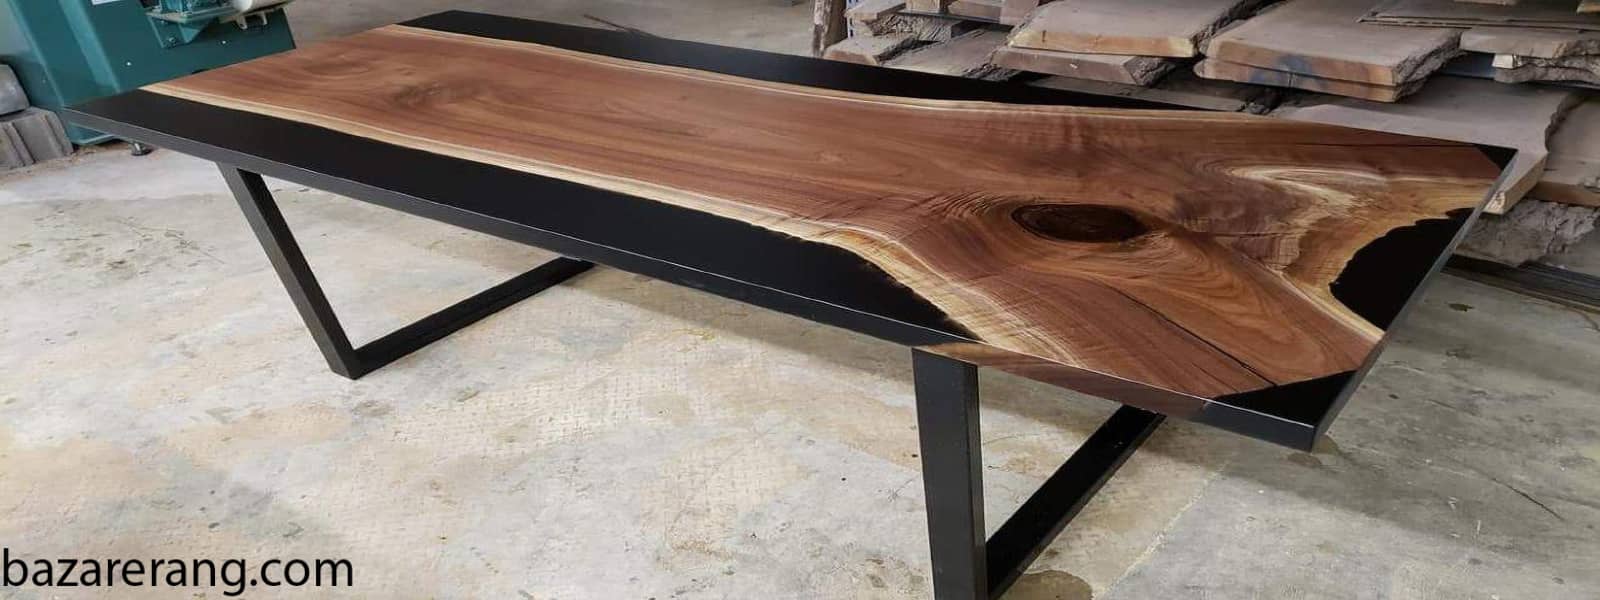 میز چوبی کامل و آماده شده با رزین اپوکسی چوب